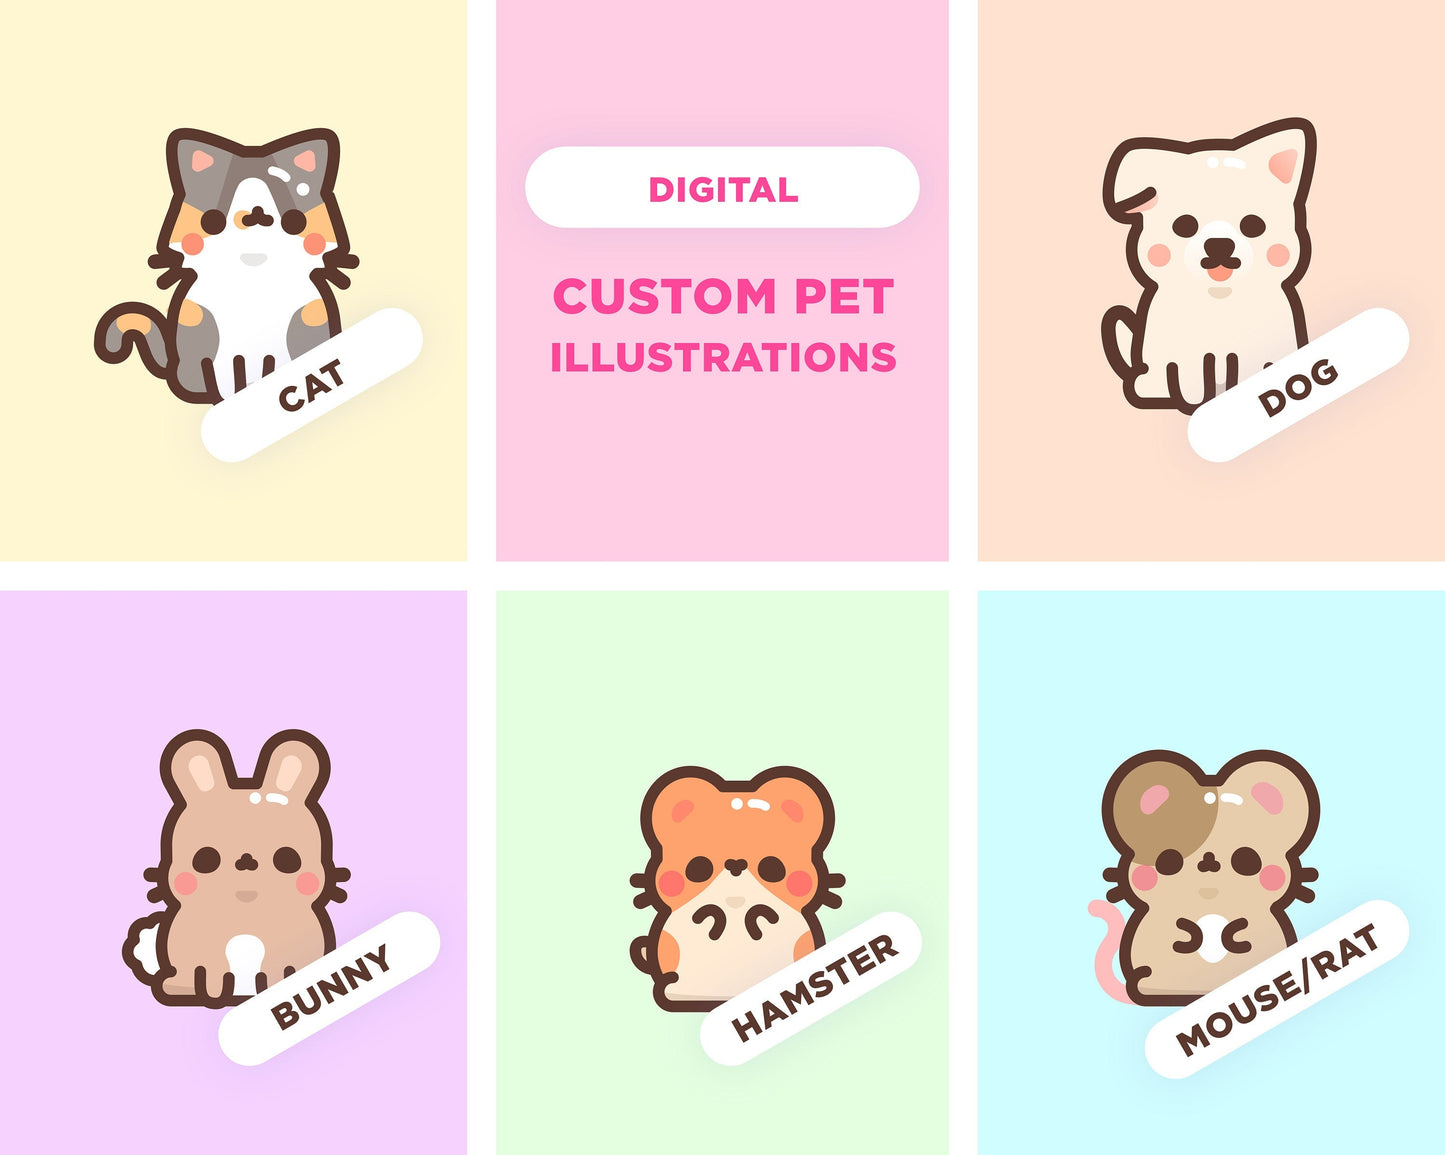 Digital Custom Pet illustration